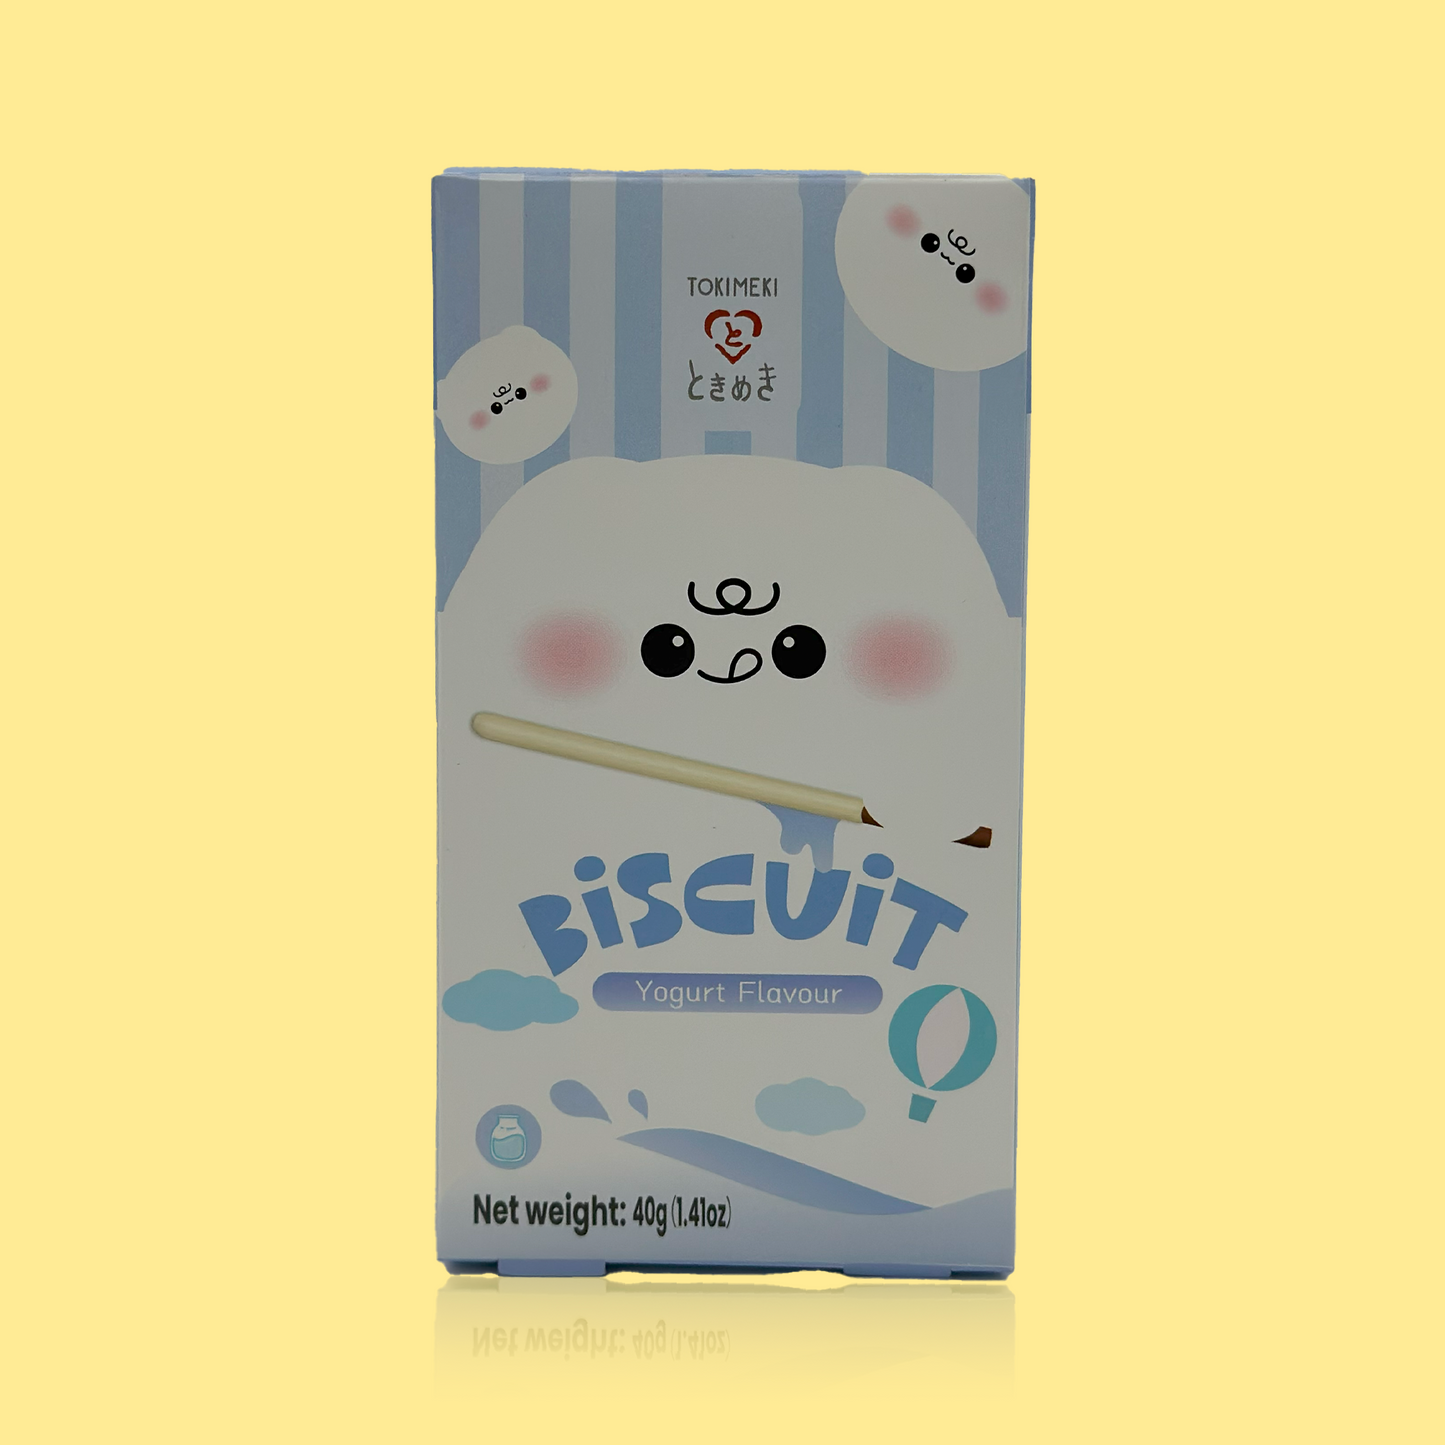 Tokimeki Biscuit Stick Yogurt Flavour 40g